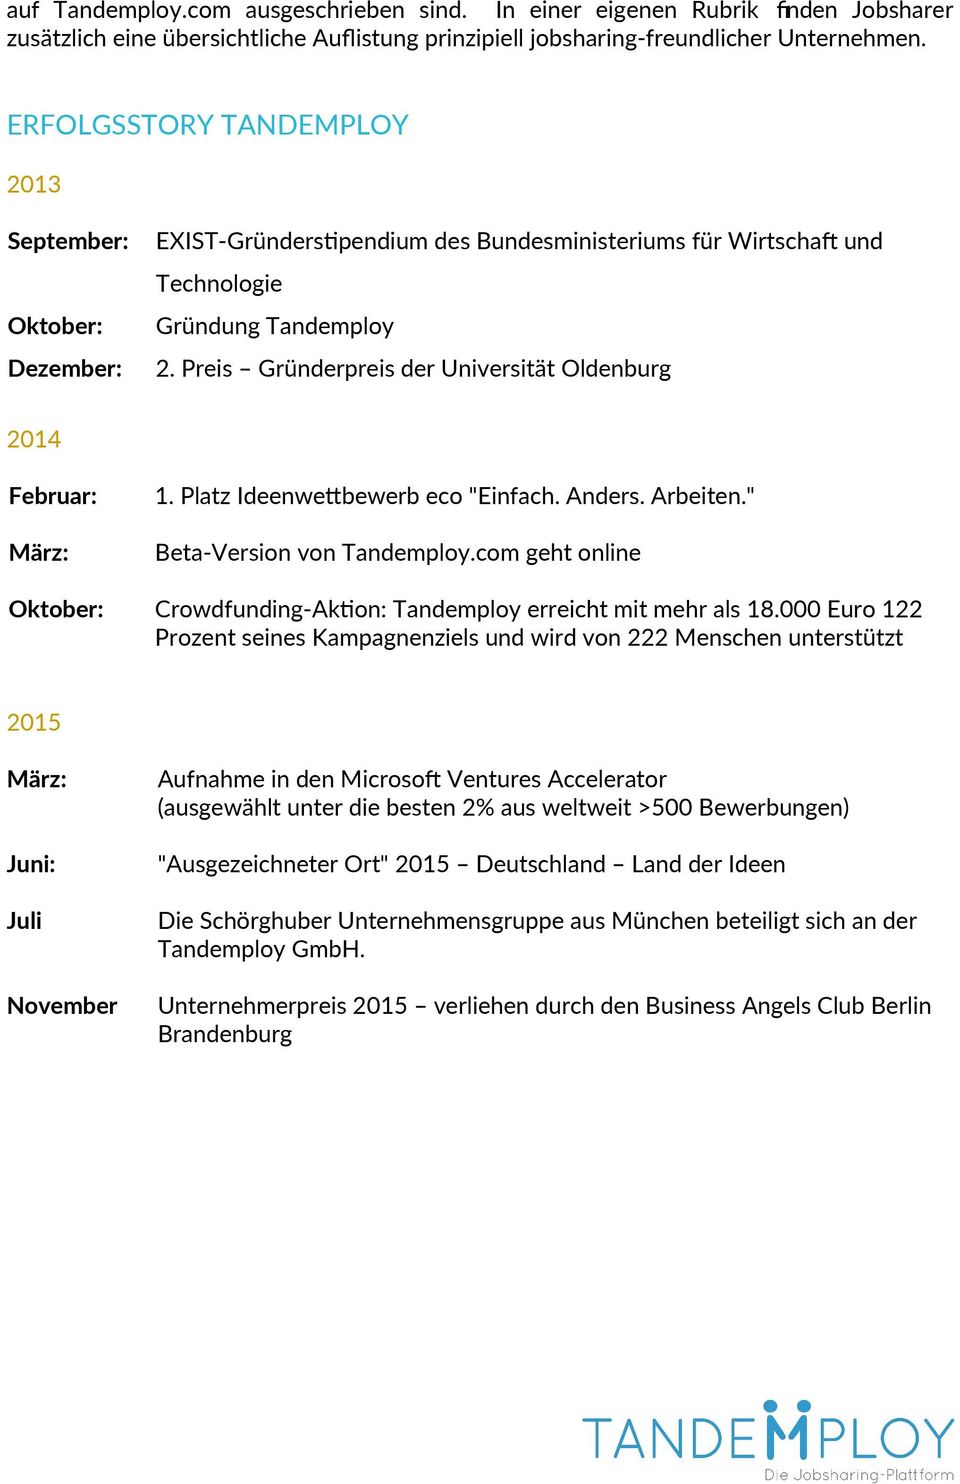 Preis Gründerpreis der Universität Oldenburg 2014 Februar: März: 1. Platz Ideenwetbewerb eco "Einfach. Anders. Arbeiten." Beta-Version von Tandemploy.